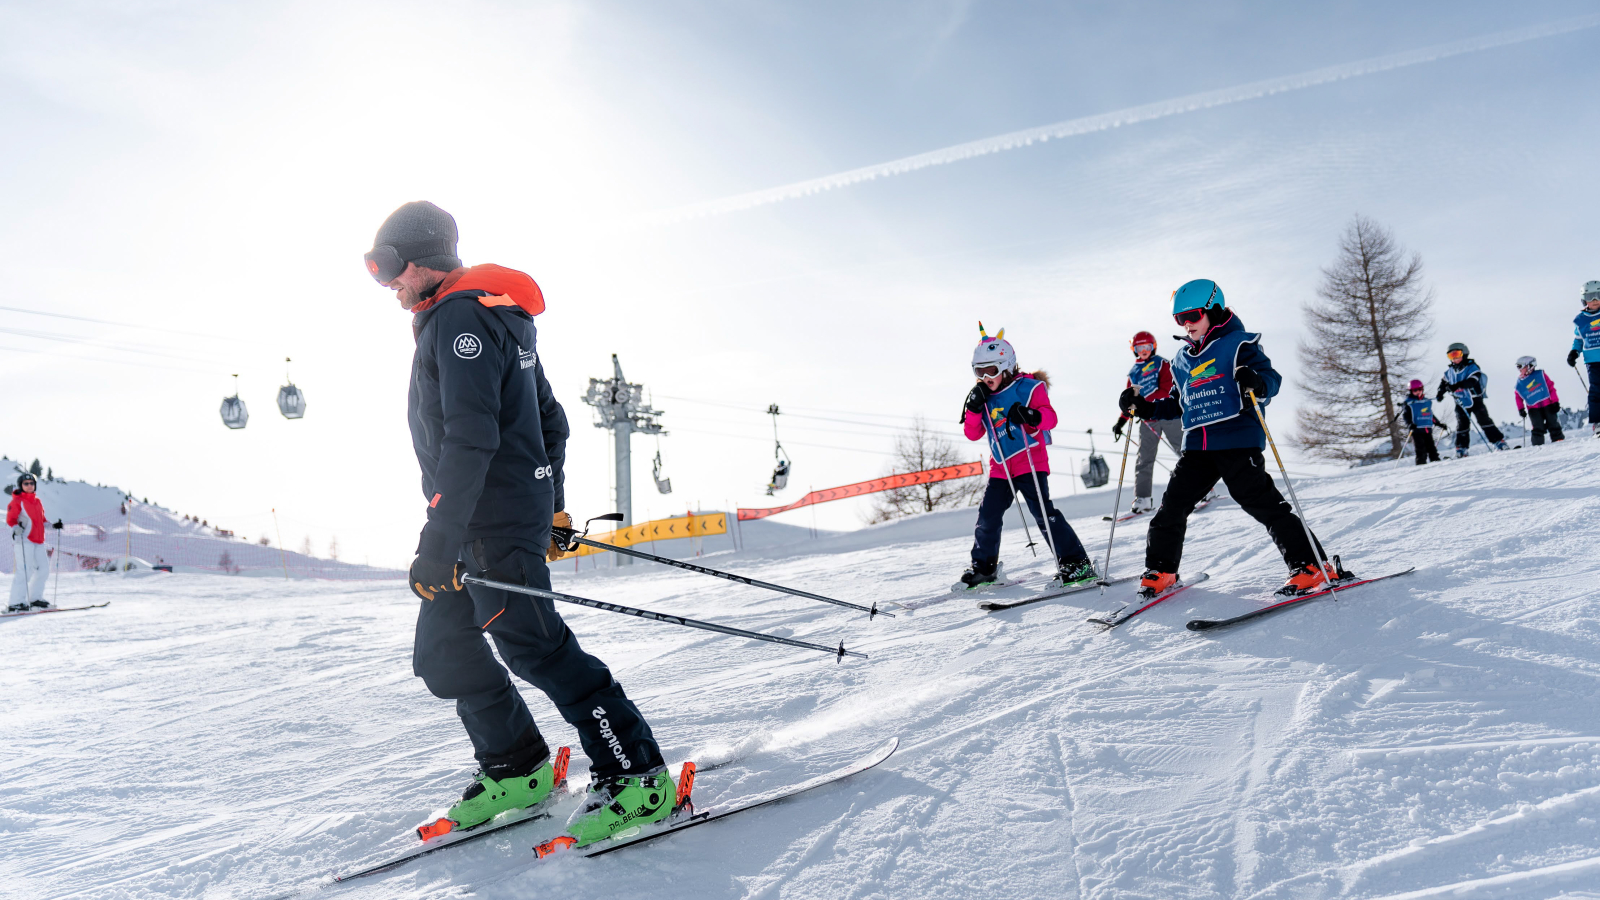 Evolution2-Chamonix-children-ski-course-intermediate